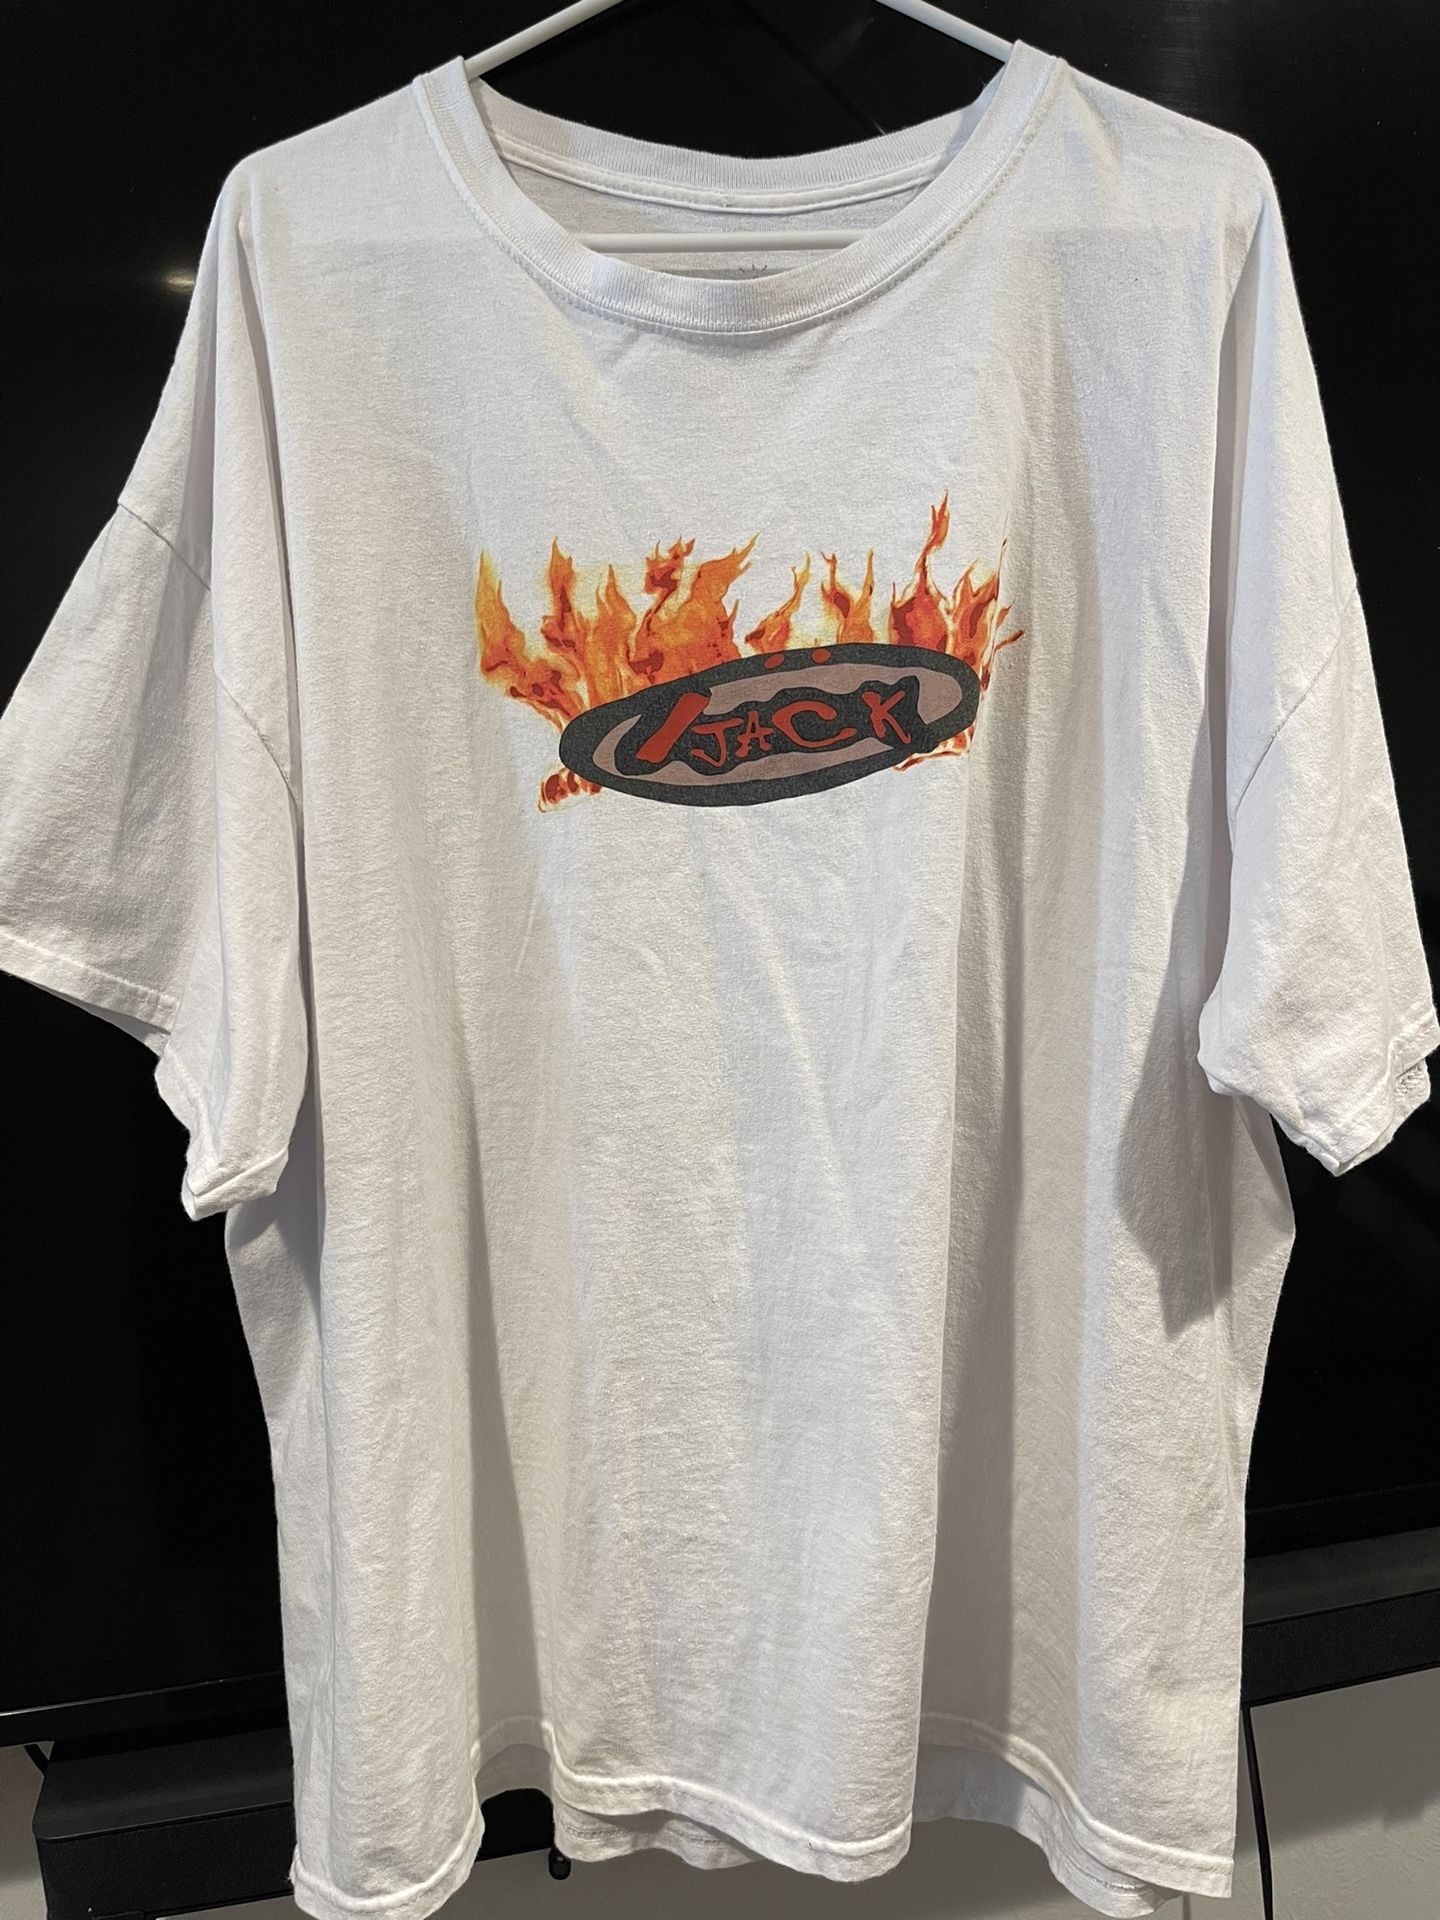 Travis Scott Cactus Jack Men's T-Shirt Flames Tee Size XXL Cotton